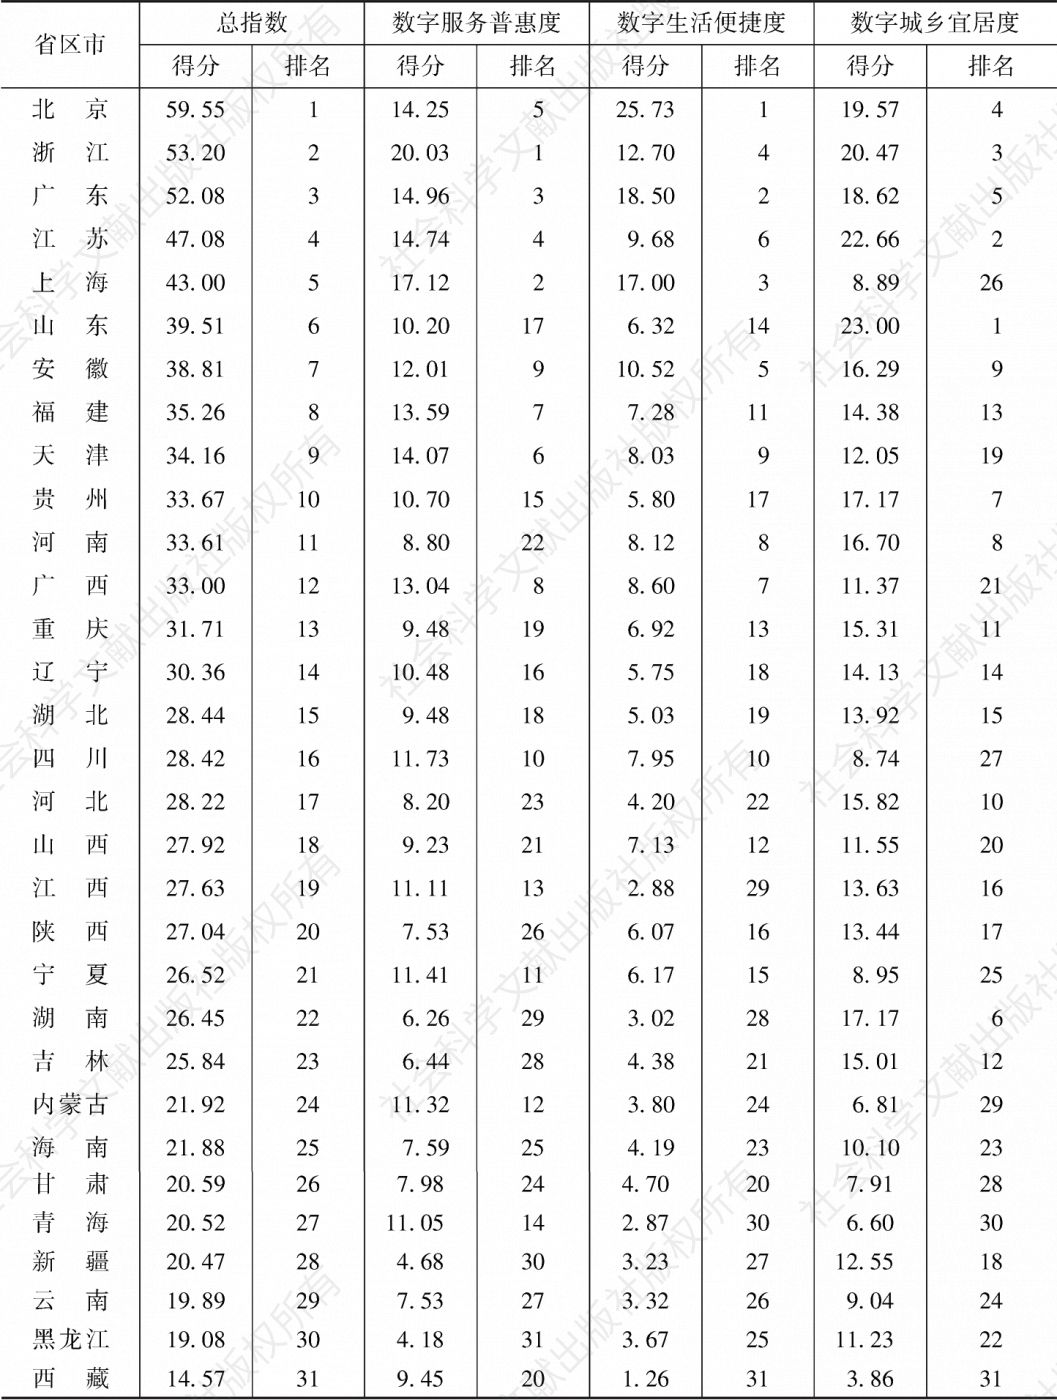 表1 2021年中国数字社会指数得分和排名情况